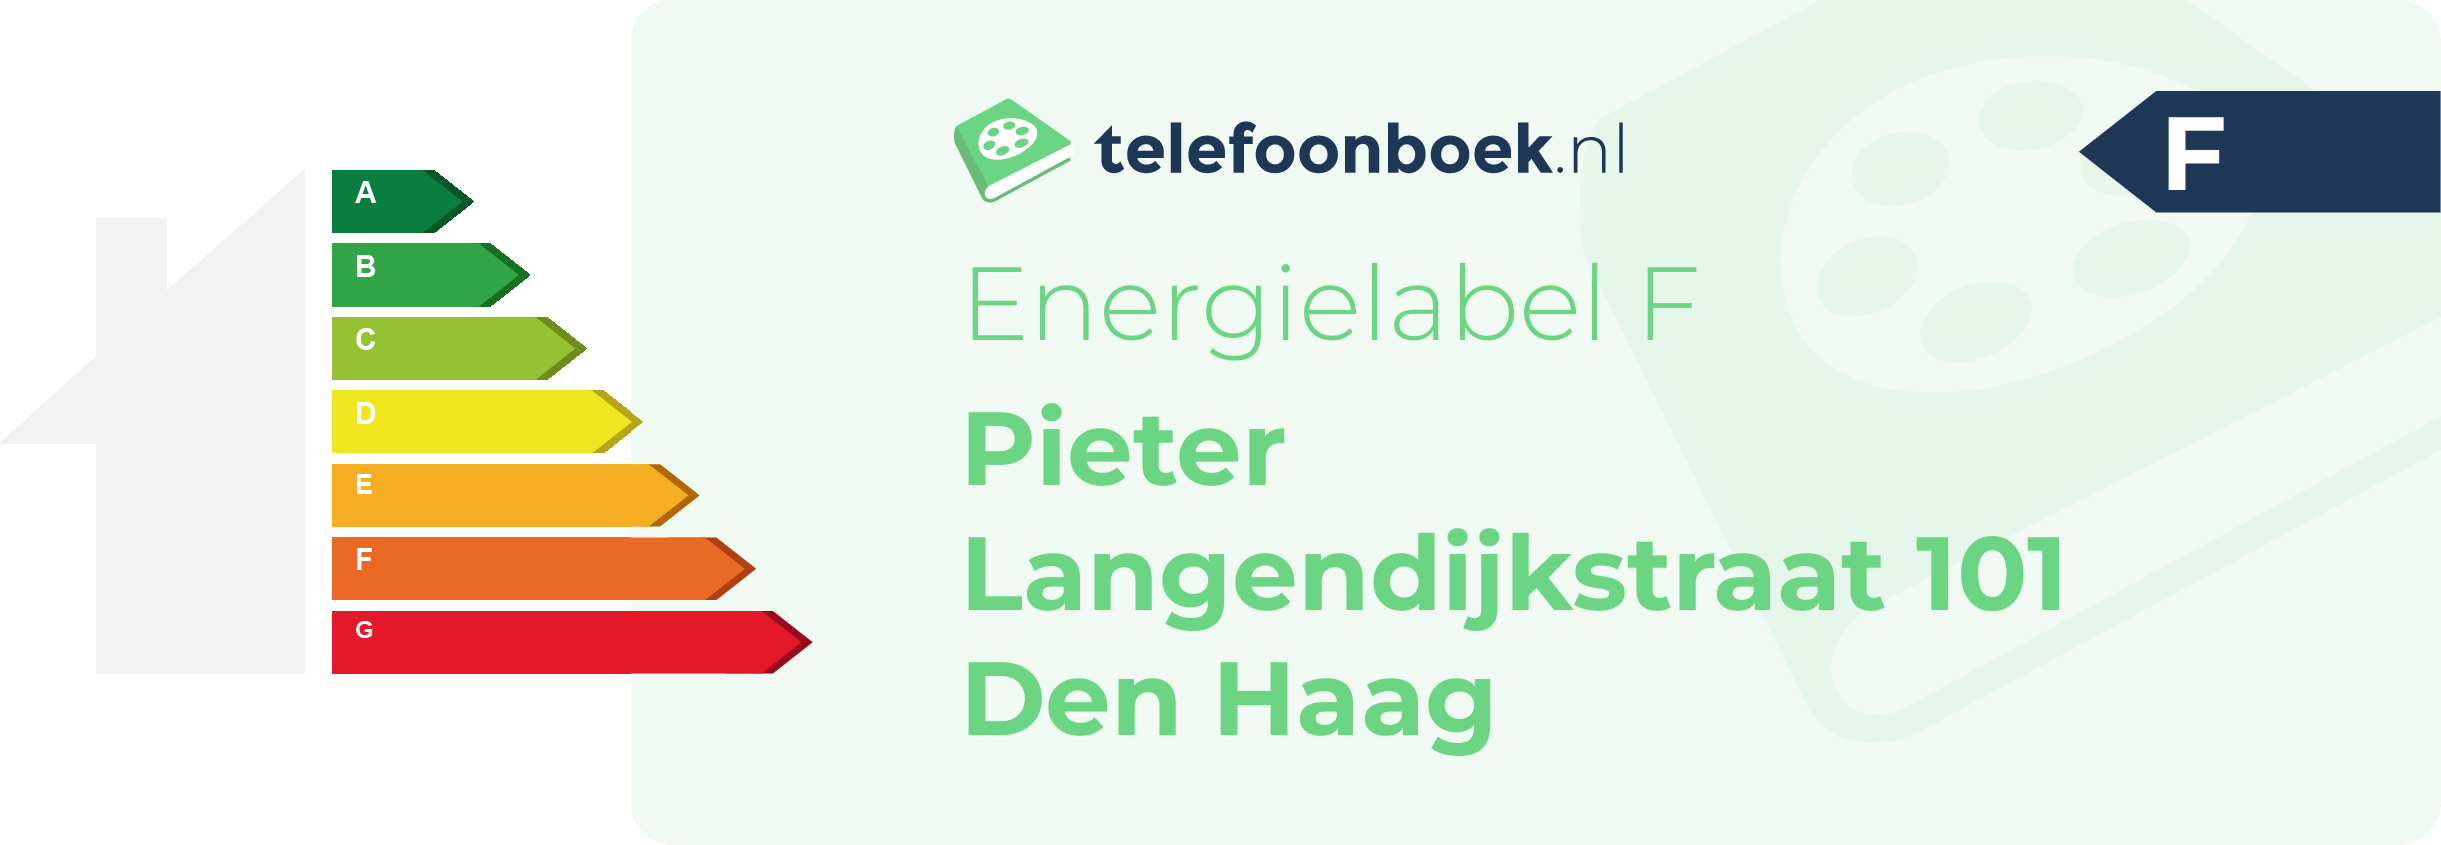 Energielabel Pieter Langendijkstraat 101 Den Haag